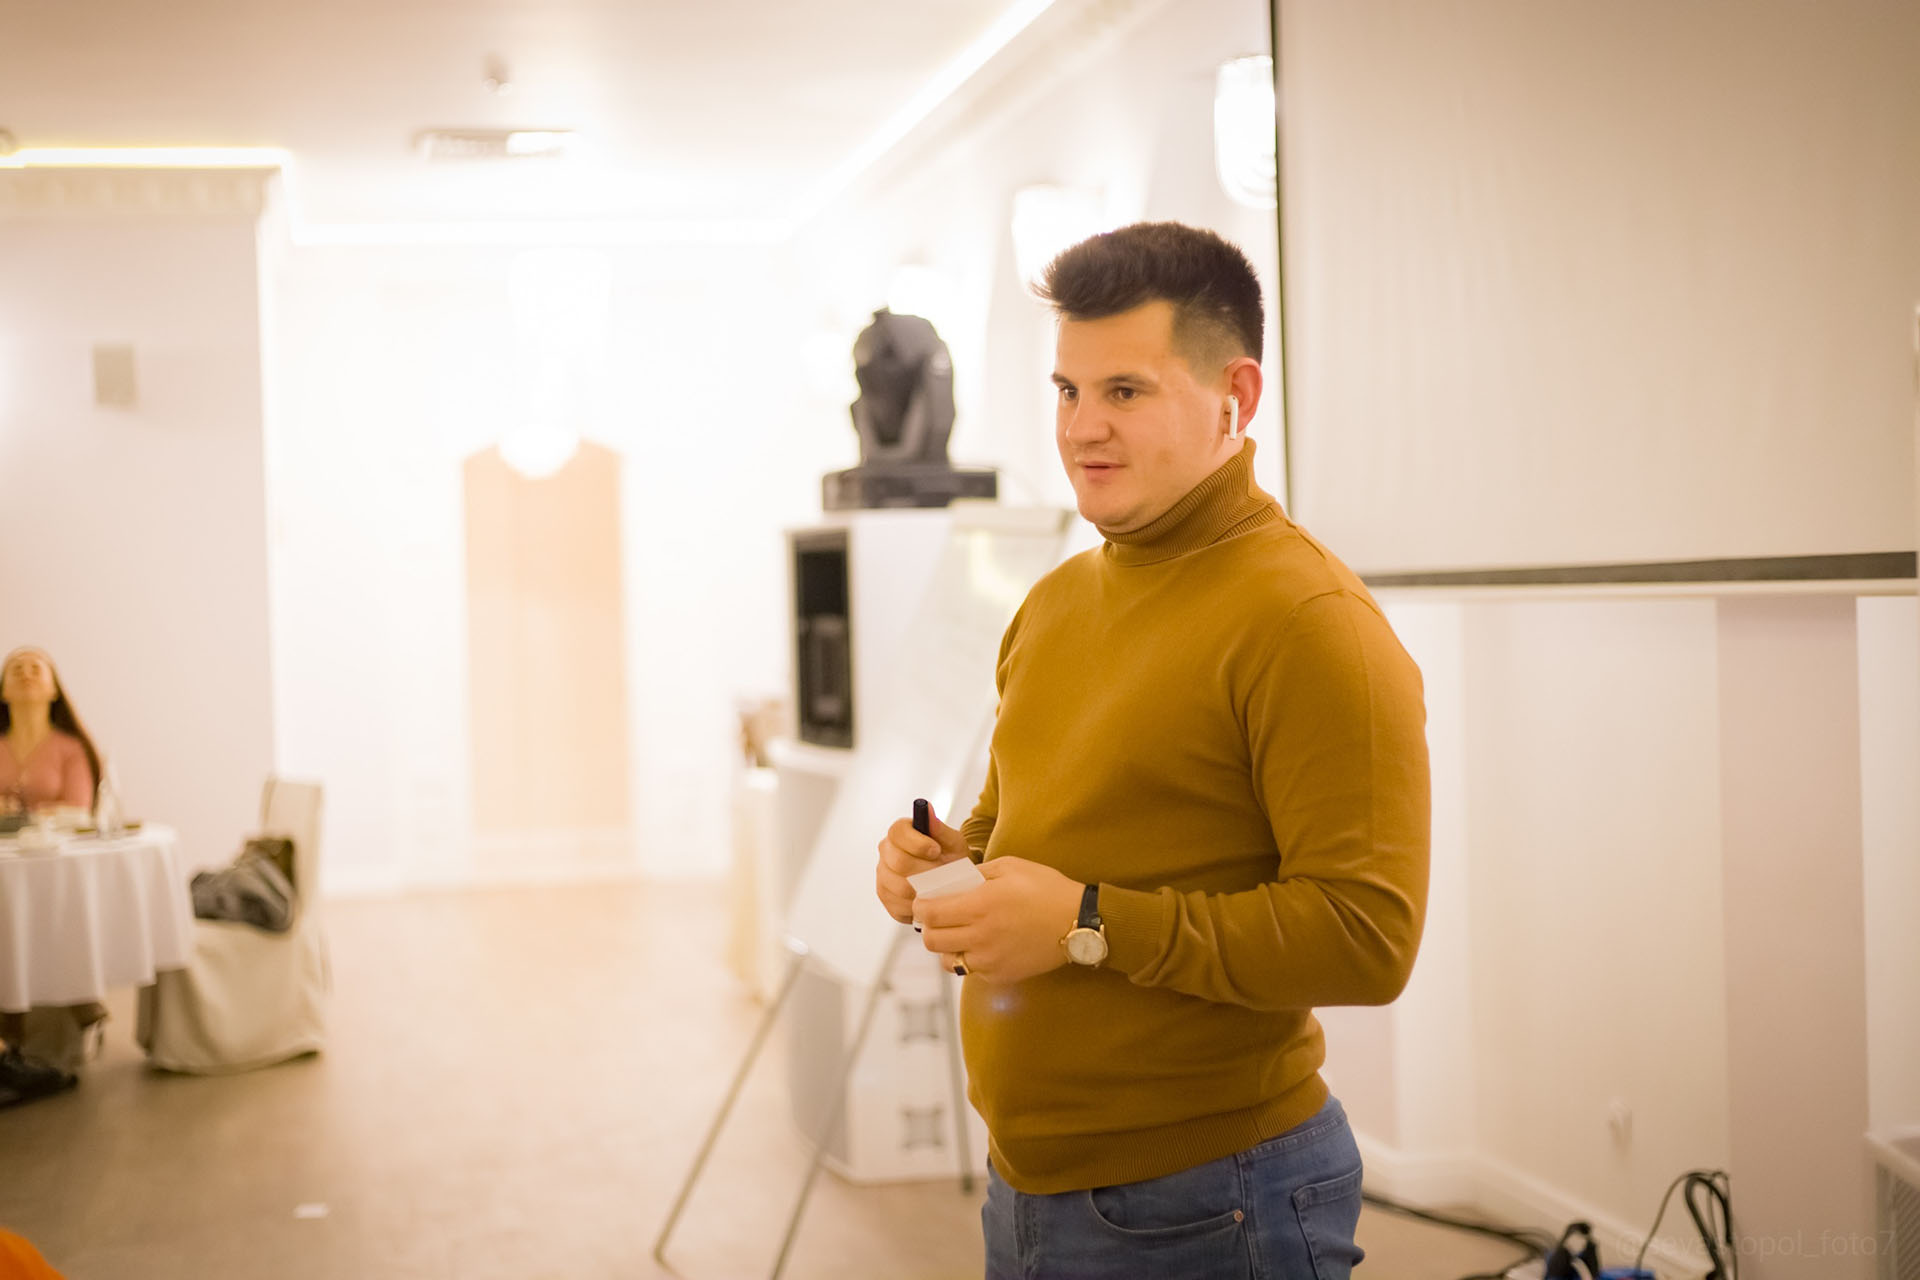 Спикер: Хайпович Андрей, эксперт с 10-летним практическим опытом в сфере маркетинга